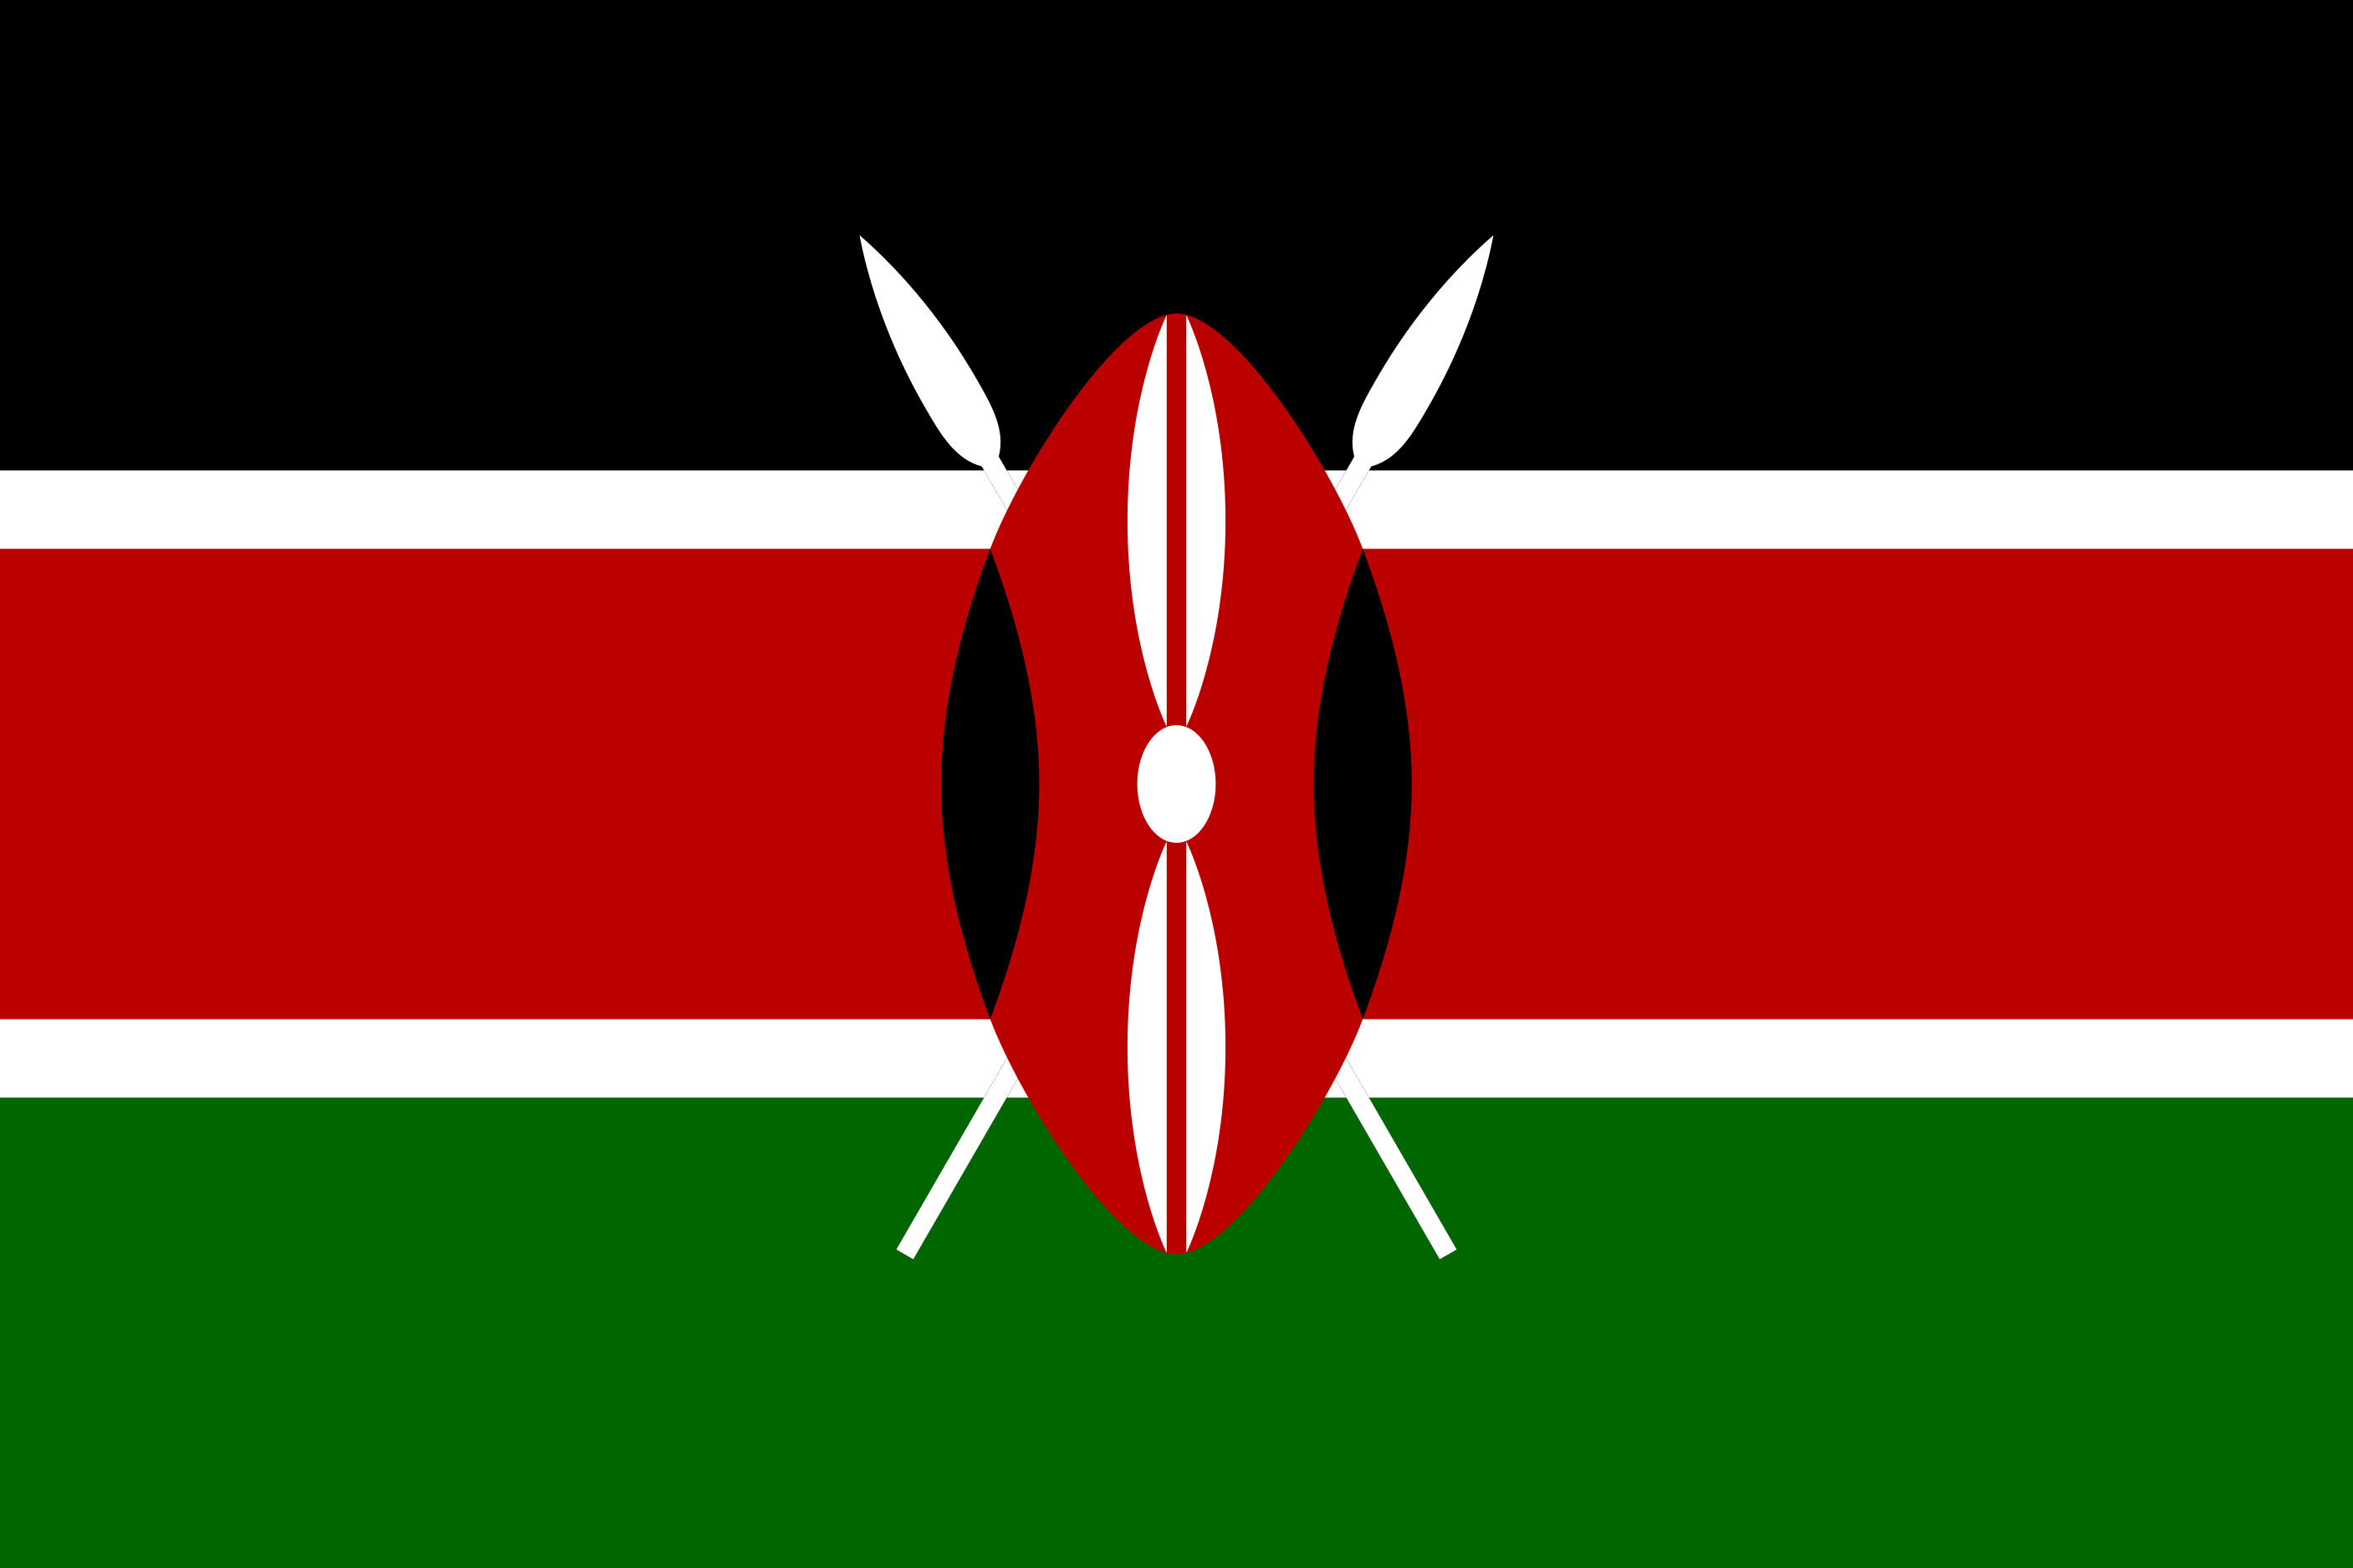 Kenya Flag Image - Free Download